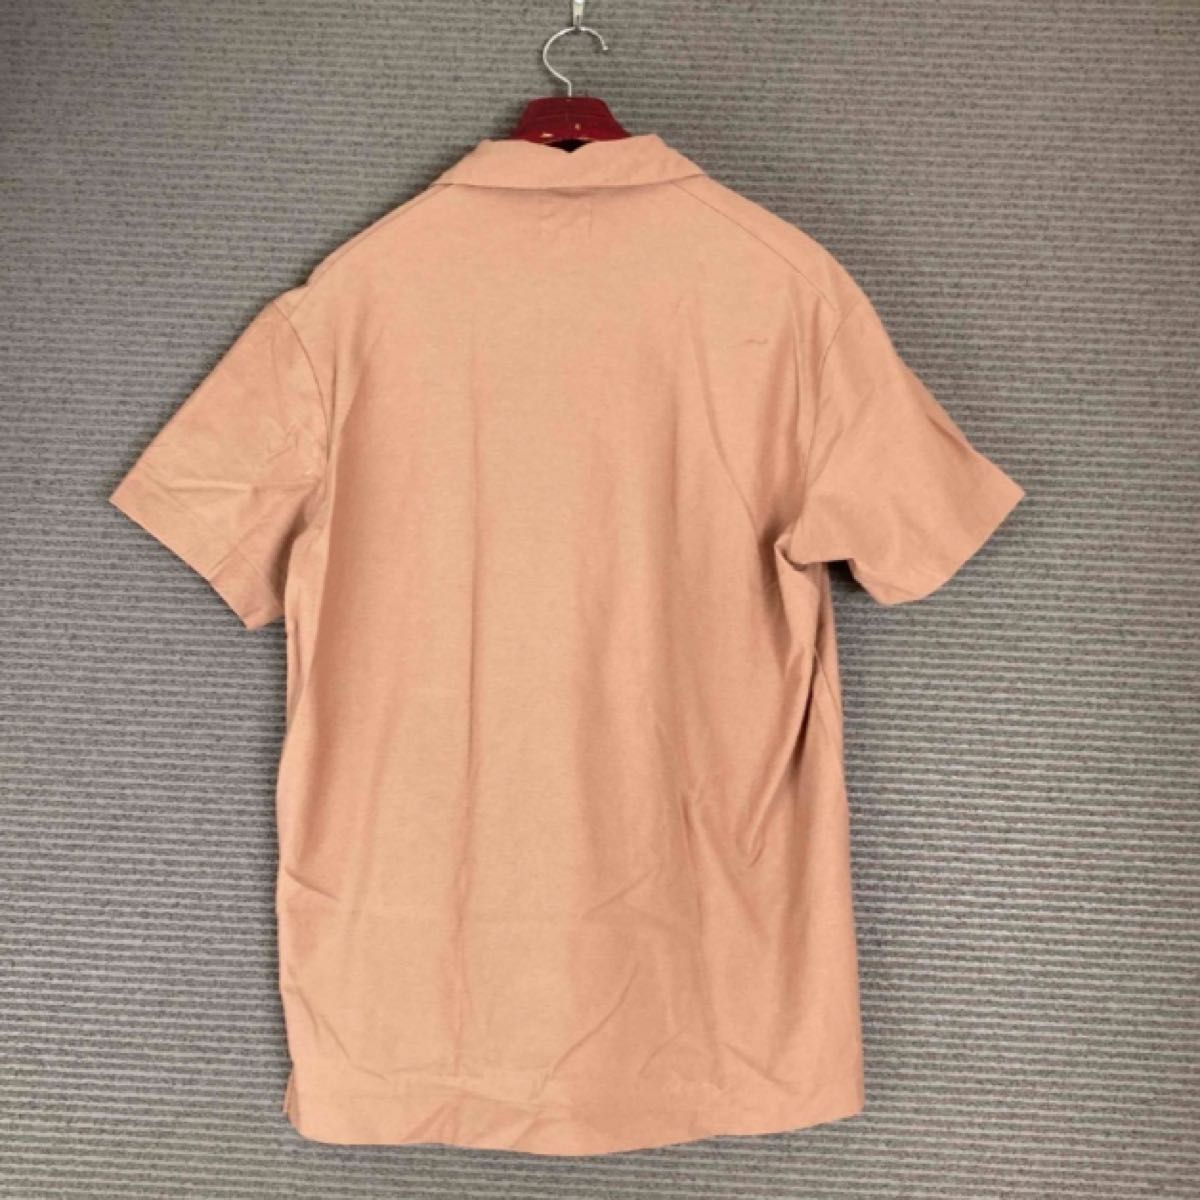 サイズ2 カーリー半袖カットソーポロシャツ襟付き オレンジ トップス コットン